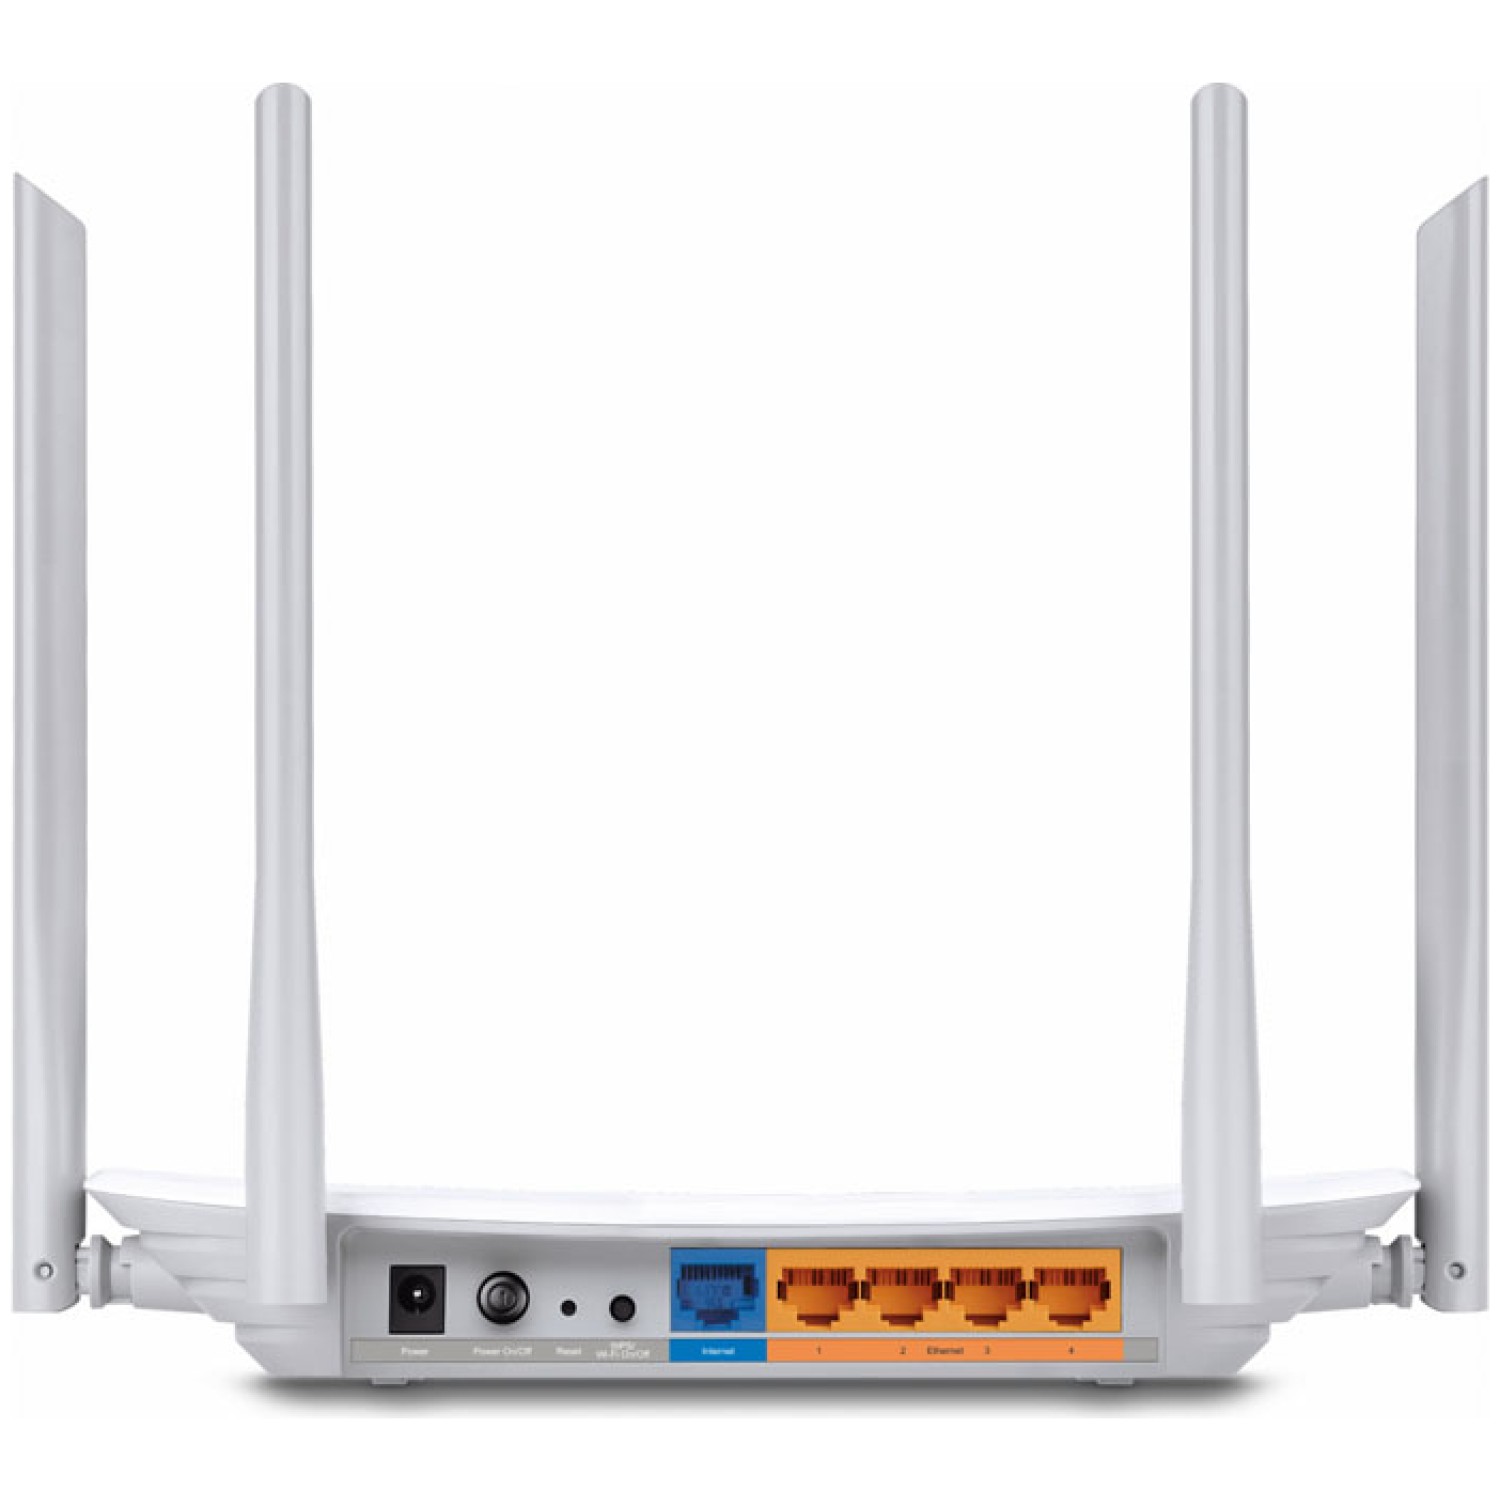 pošte ter obenem igranje spletnih iger ali pretakanje zahtevnega videa brez zamikov na drugem frekvenčnem območju.  - podpora 802.11ac - nova generacija Wi-Fi - Dual band za kombinirane hitrosti do 1200Mbps na 2.4GHz in 5GHz frekvencah - dve pritrjeni vsesmerni zunanji anteni ponujajo velik doseg brezžičnega omrežja - omrežno gostovanje - starševski nadzor - IP nadzor vam omogoča dodeljevanje pasovne širine med poveznimi napravami - gumb za Wi-Fi vklop/izklop - enostavna nastavitev WPA brezžične varnosti z WPS gumbom - WPA-PSK/WPA2-PSK enkripcije - Easy Setup Assistant za hitro in enostavno nastavitev - IPv6 podpora za novo generacijo interneta - Tether aplikacija za nadzor preko pametnega telefona. - Balix gaming trgovina za videoigre in računalniško opremo